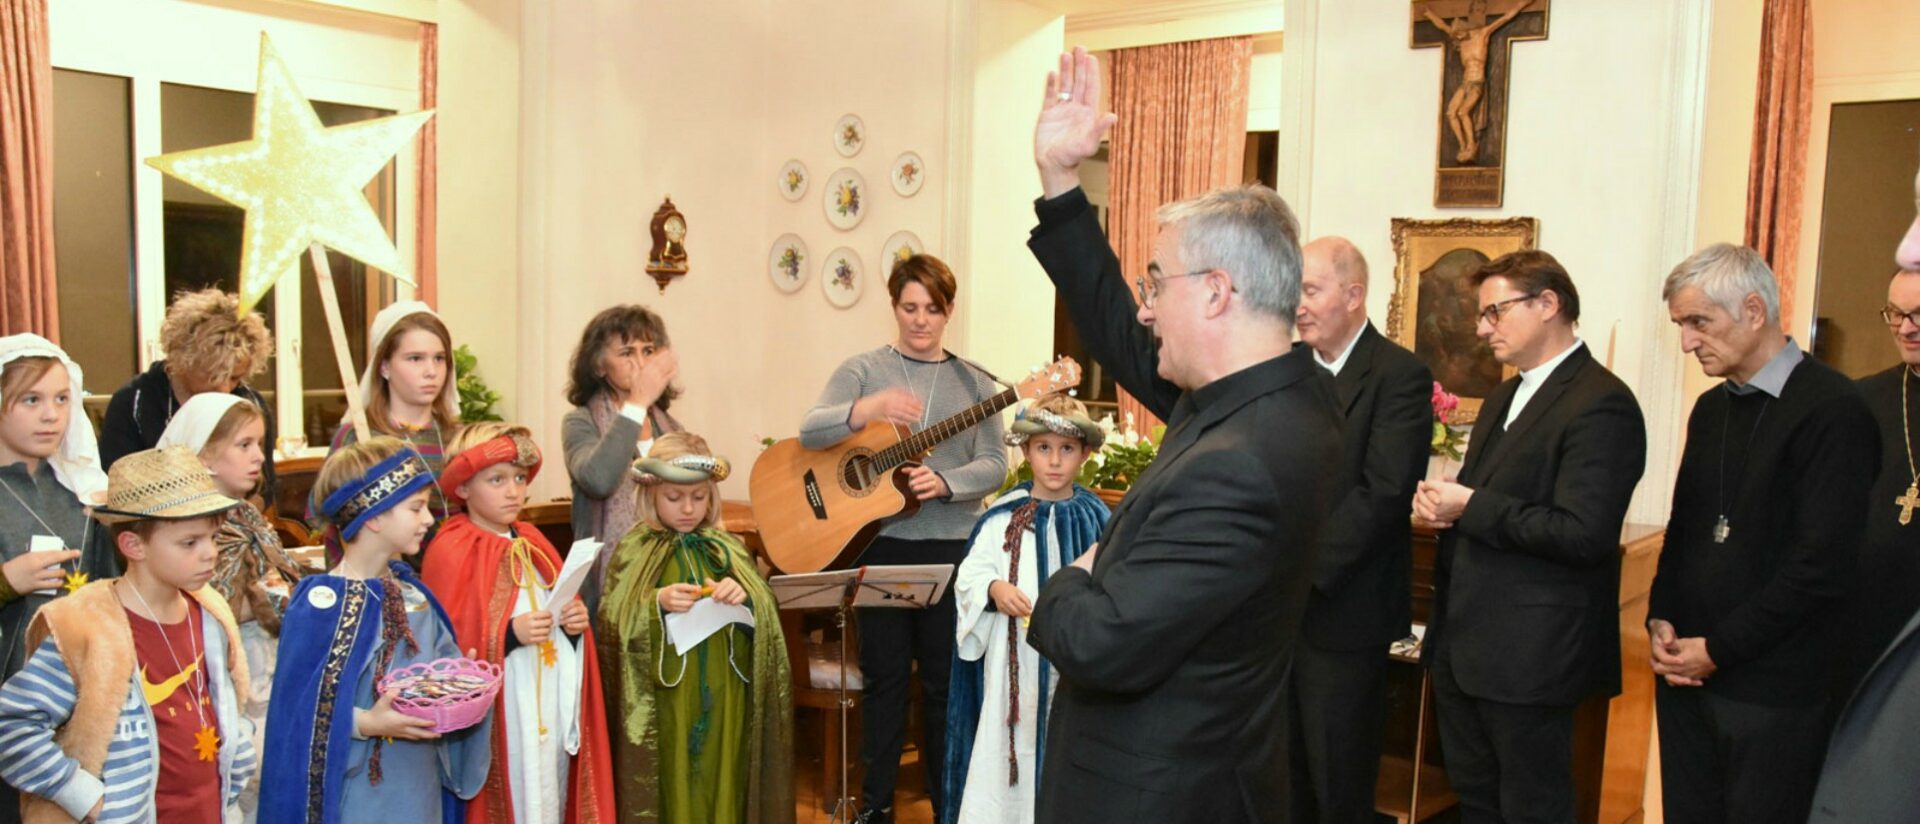 Les Cantori della Stella del Ticino ont reçu la bénédiction de Mgr Valerio Lazzeri, évêque de Lugano | © Missio